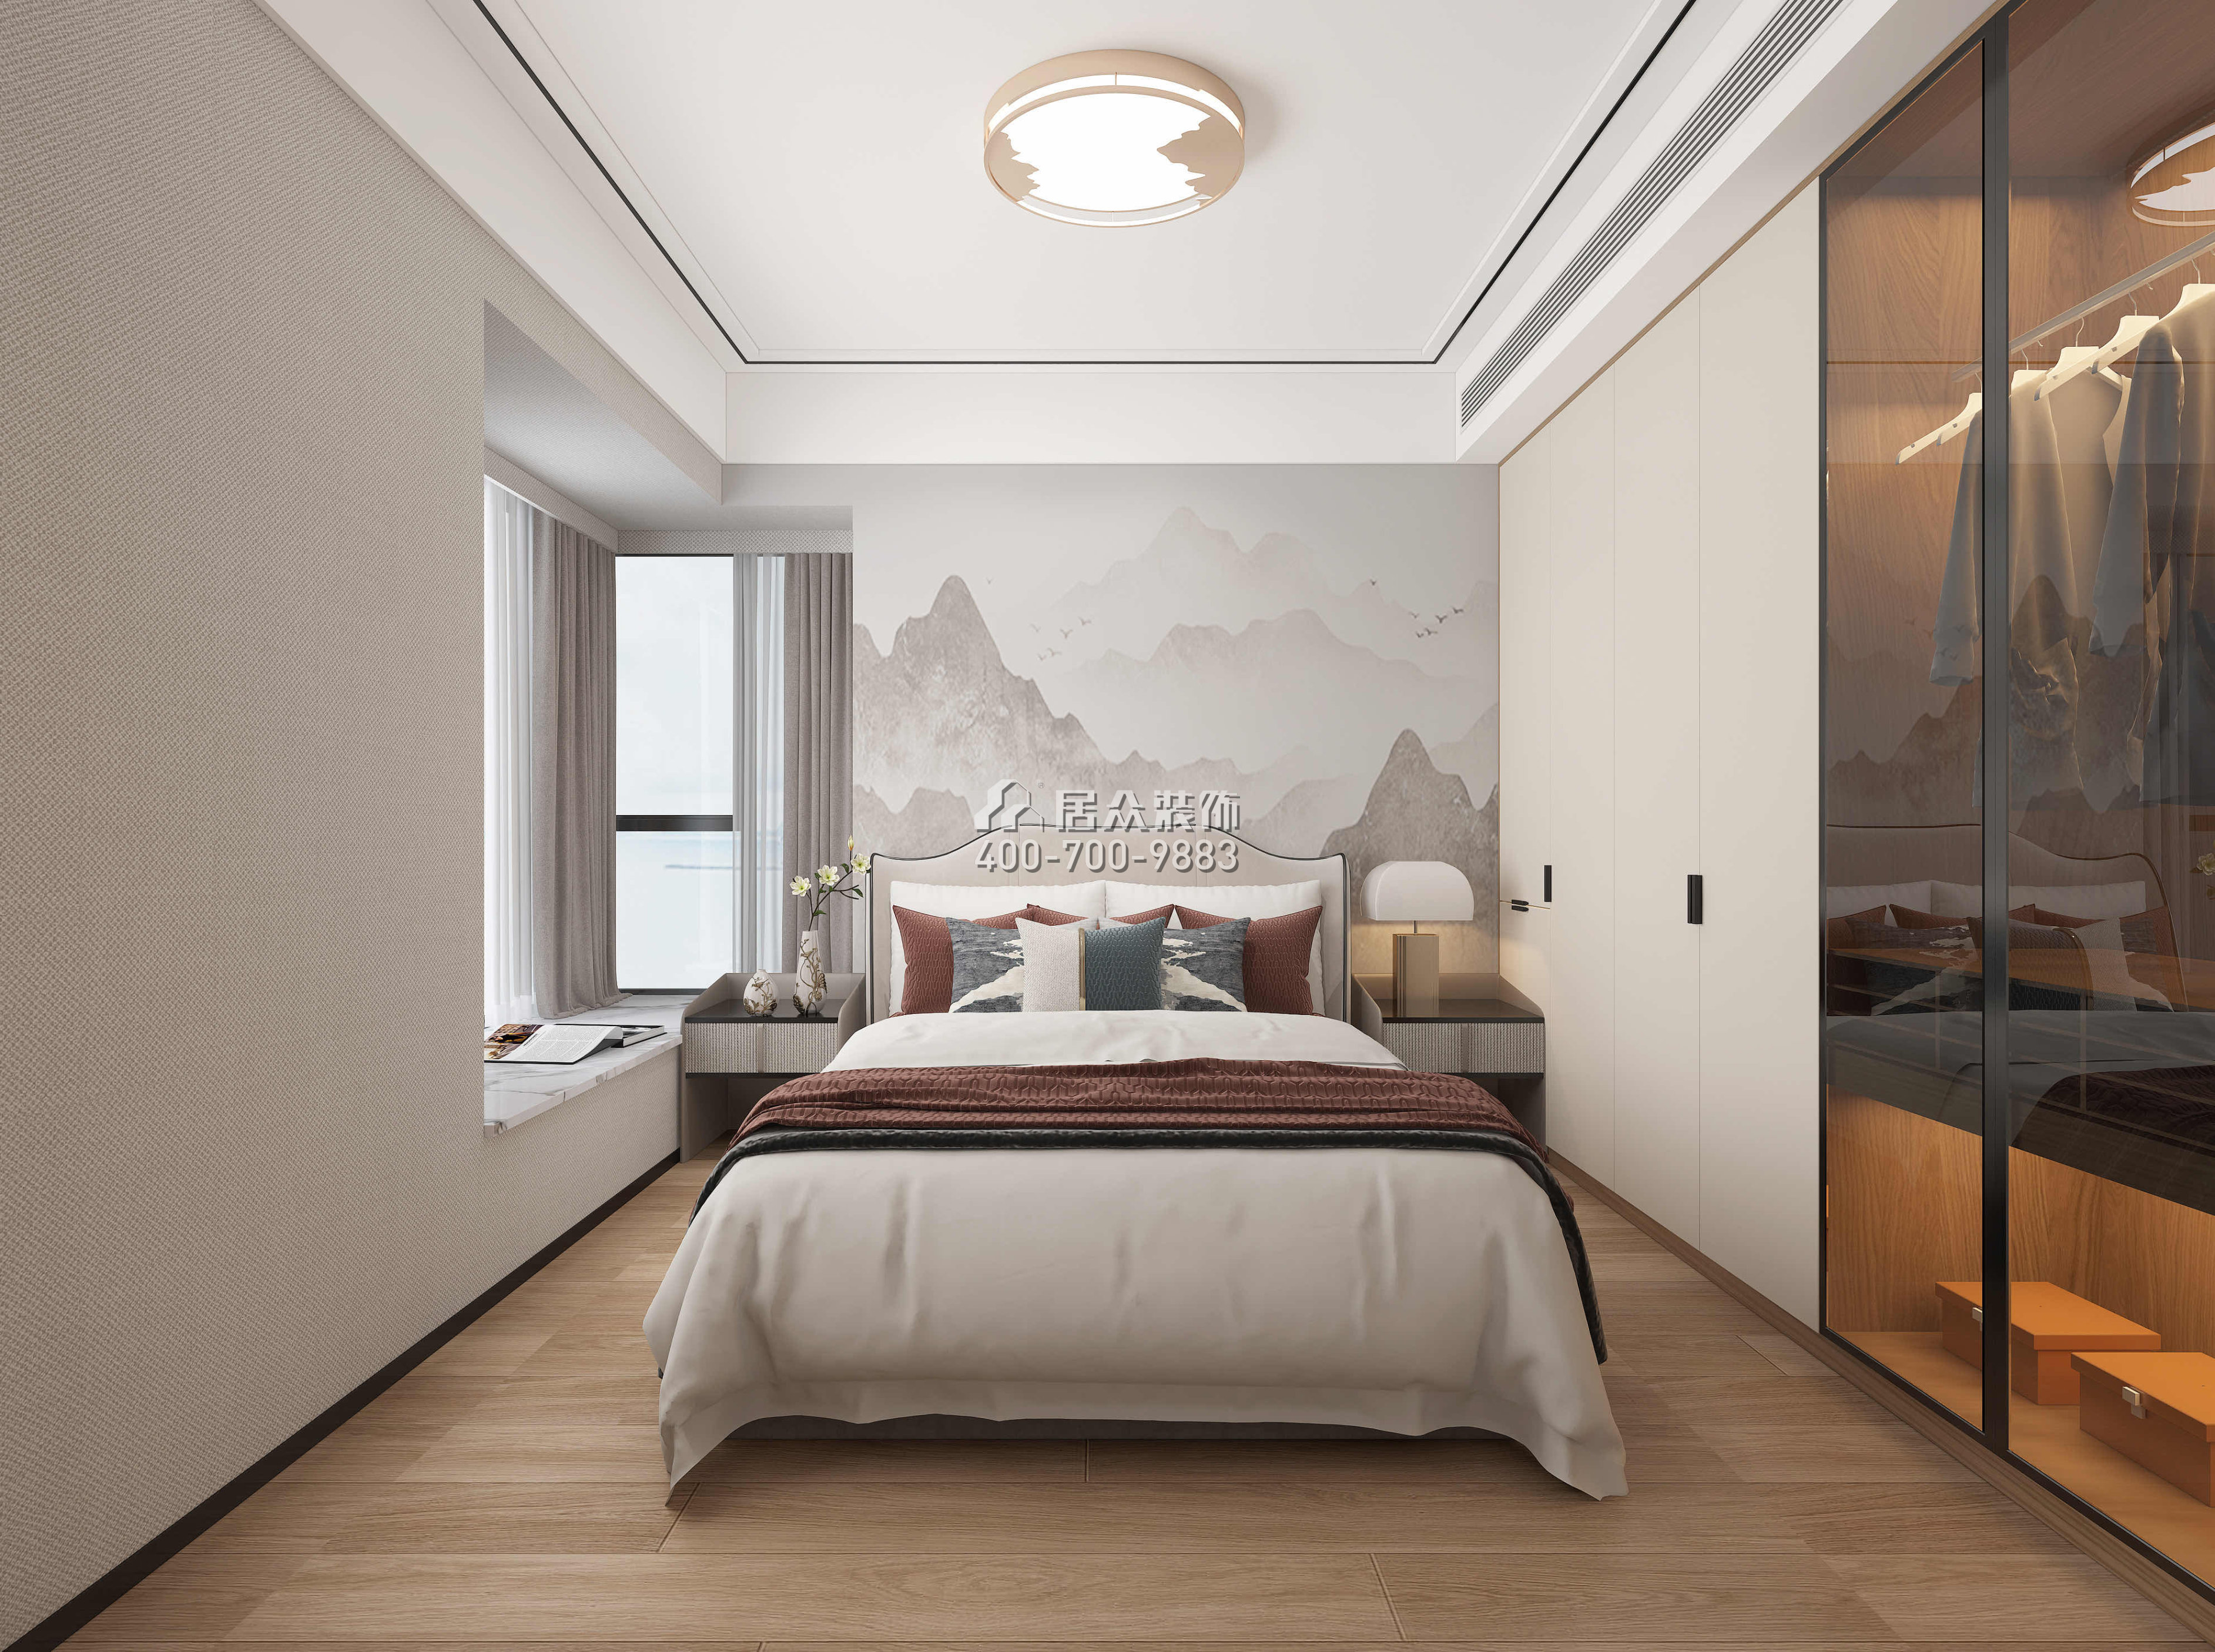 現代城夢想家園71平方米中式風格平層戶型臥室裝修效果圖